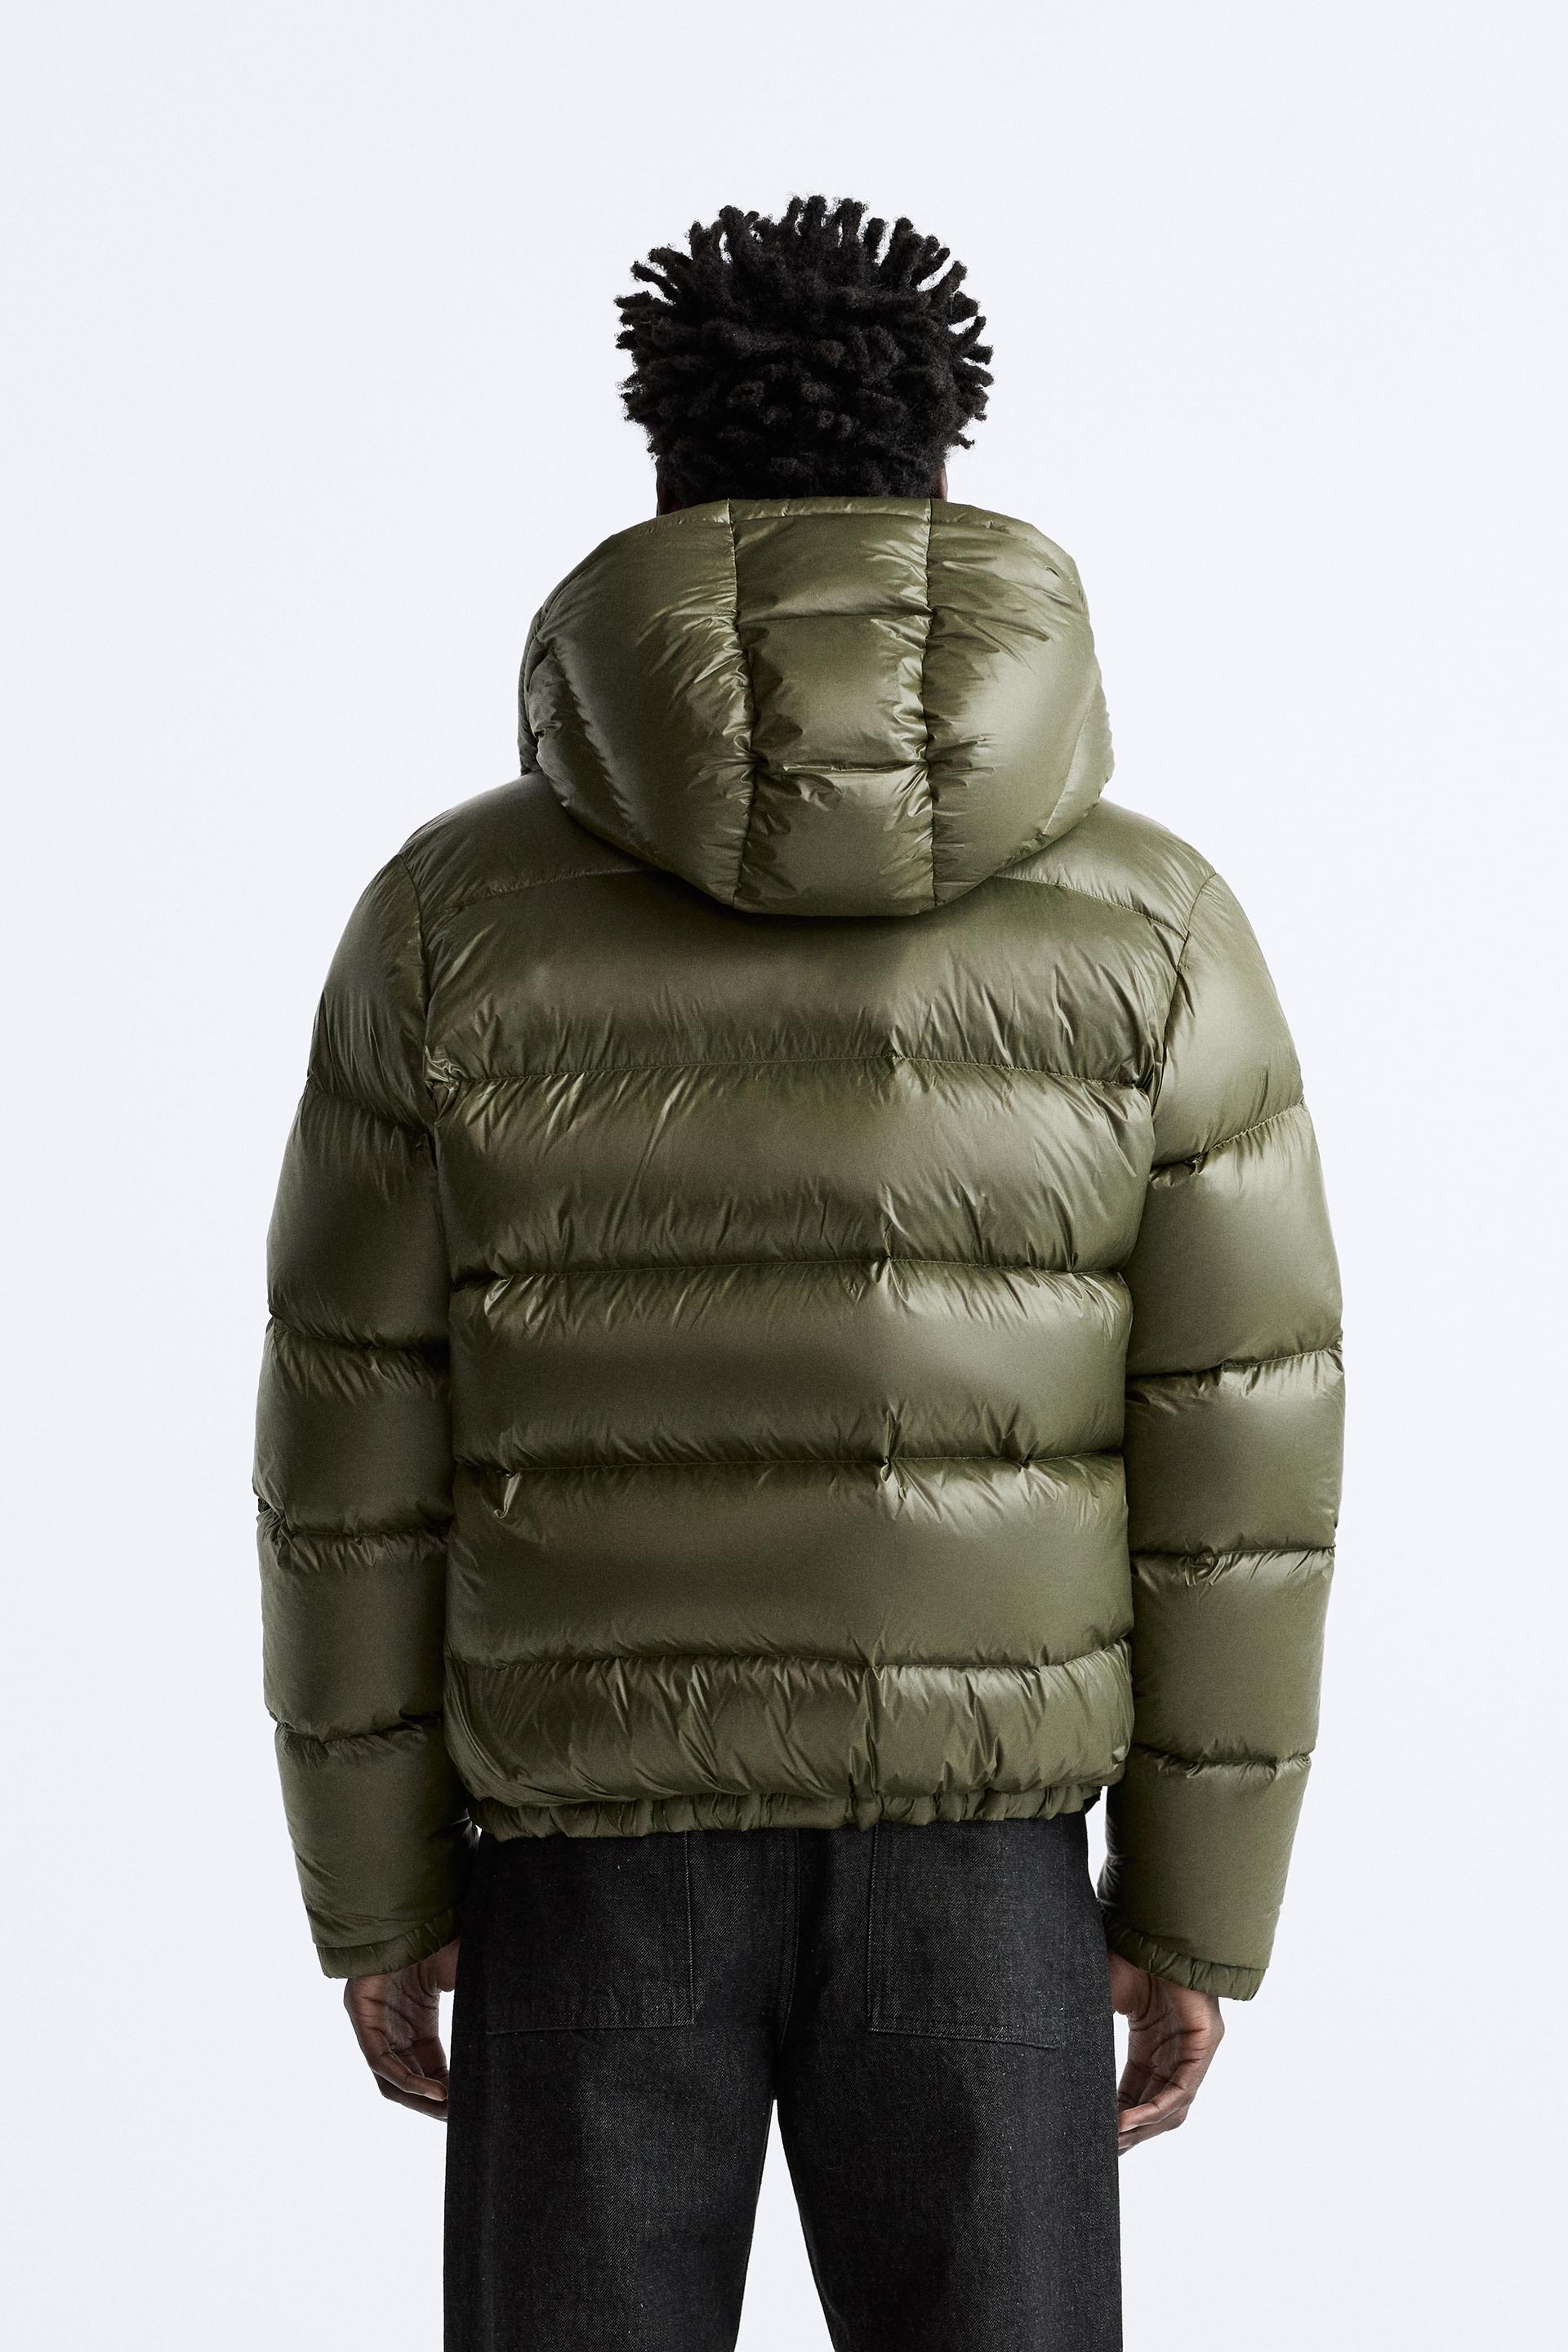 Zara y la chaqueta de plumas de hombre para hacer frente al frío